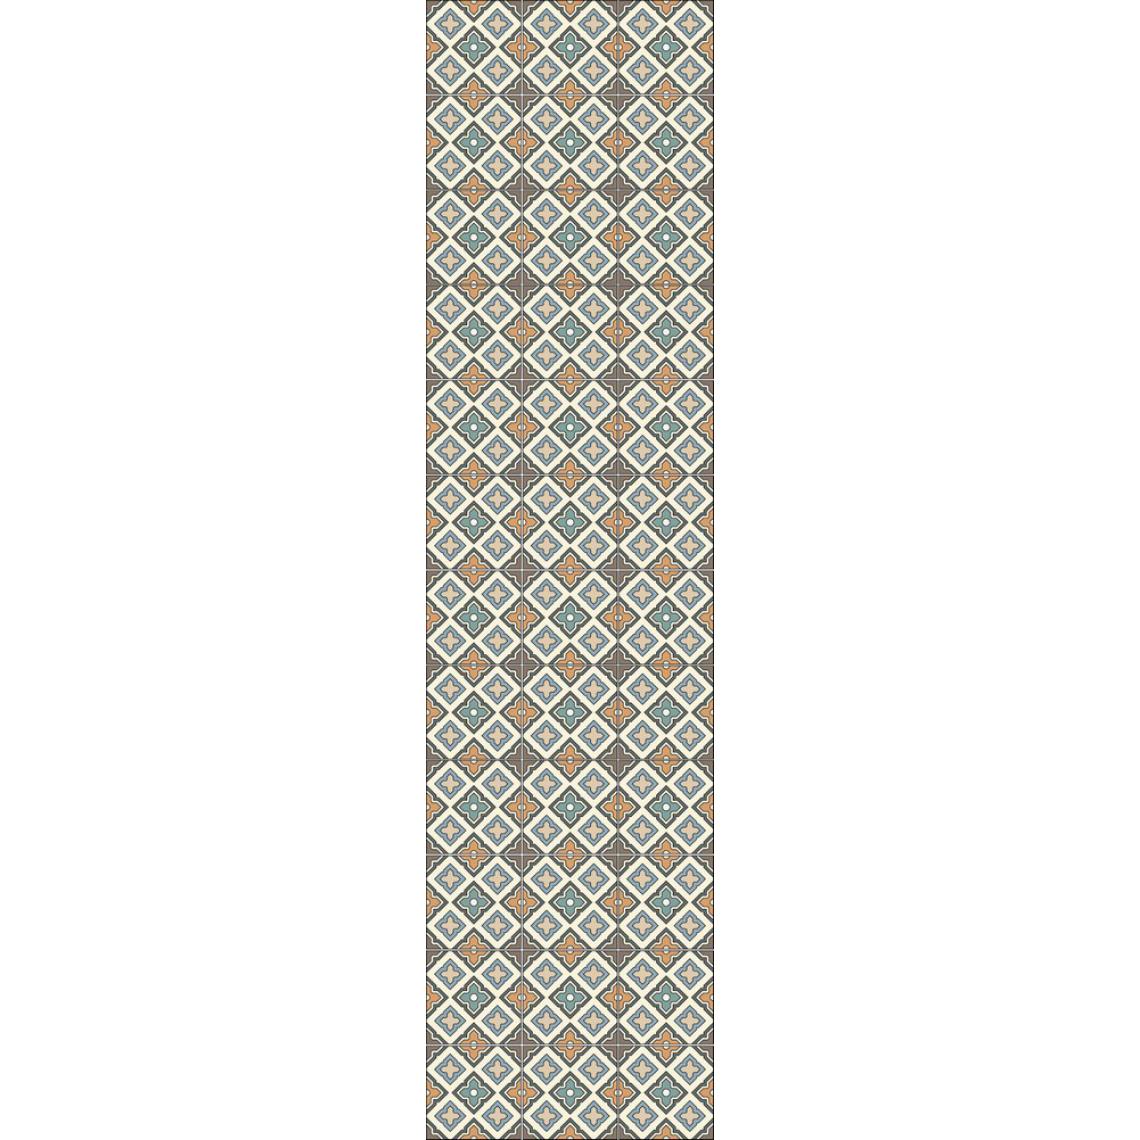 Alter - Chemin de cuisine, 100% Made in Italy, Tapis antitache avec impression numérique, Tapis antidérapant et lavable, Motif géométrique - Dionne, 180x52 cm - Tapis